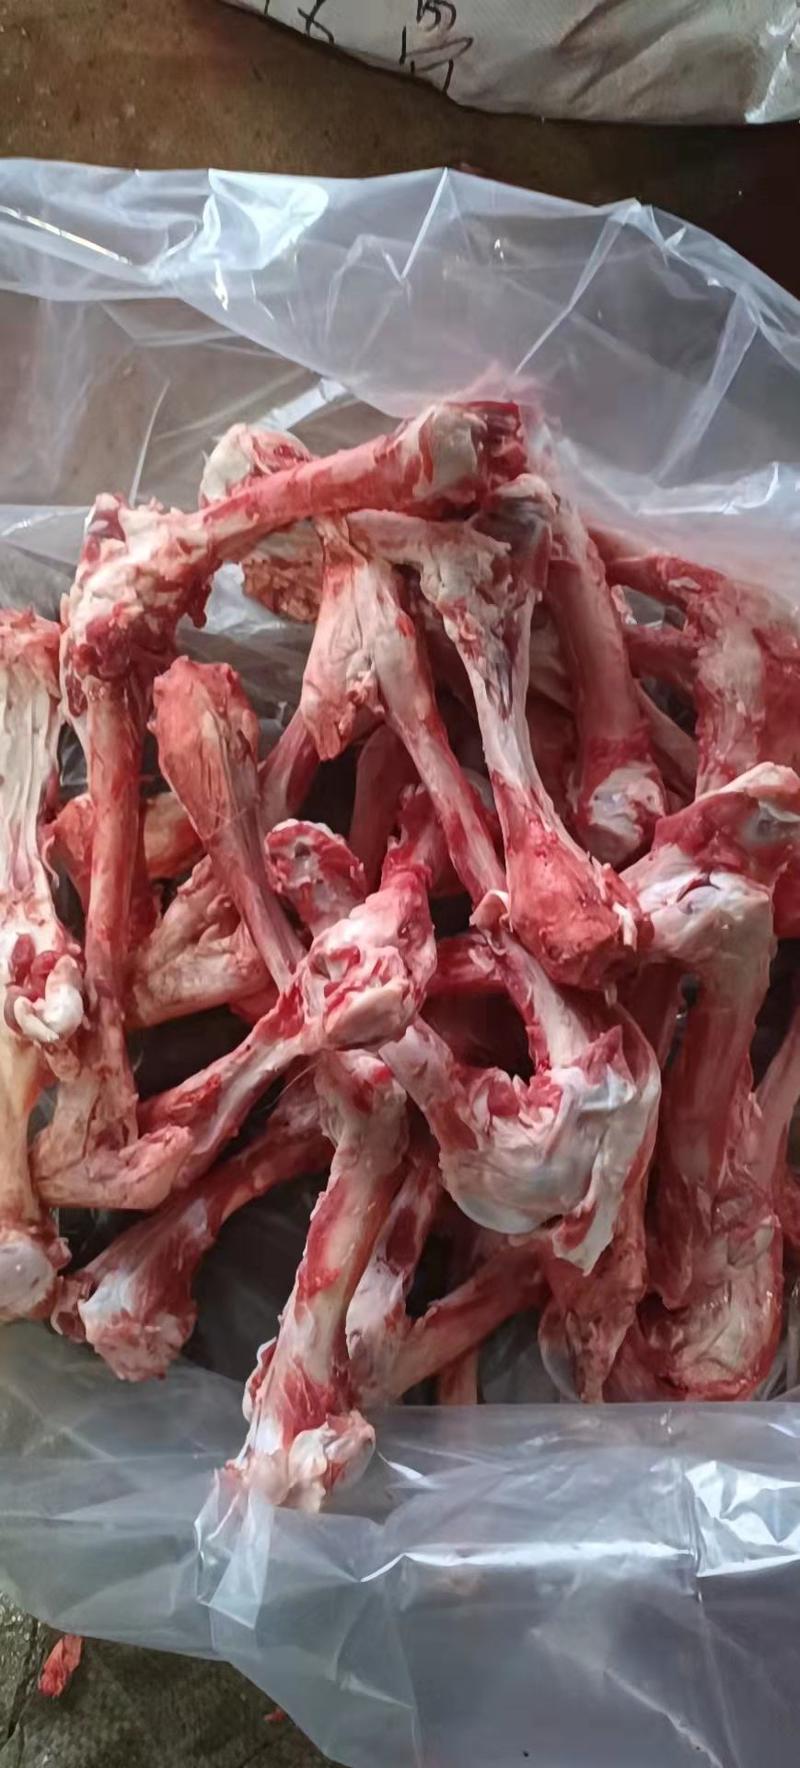 多肉大羊棒骨6元一斤全国发货可发样品